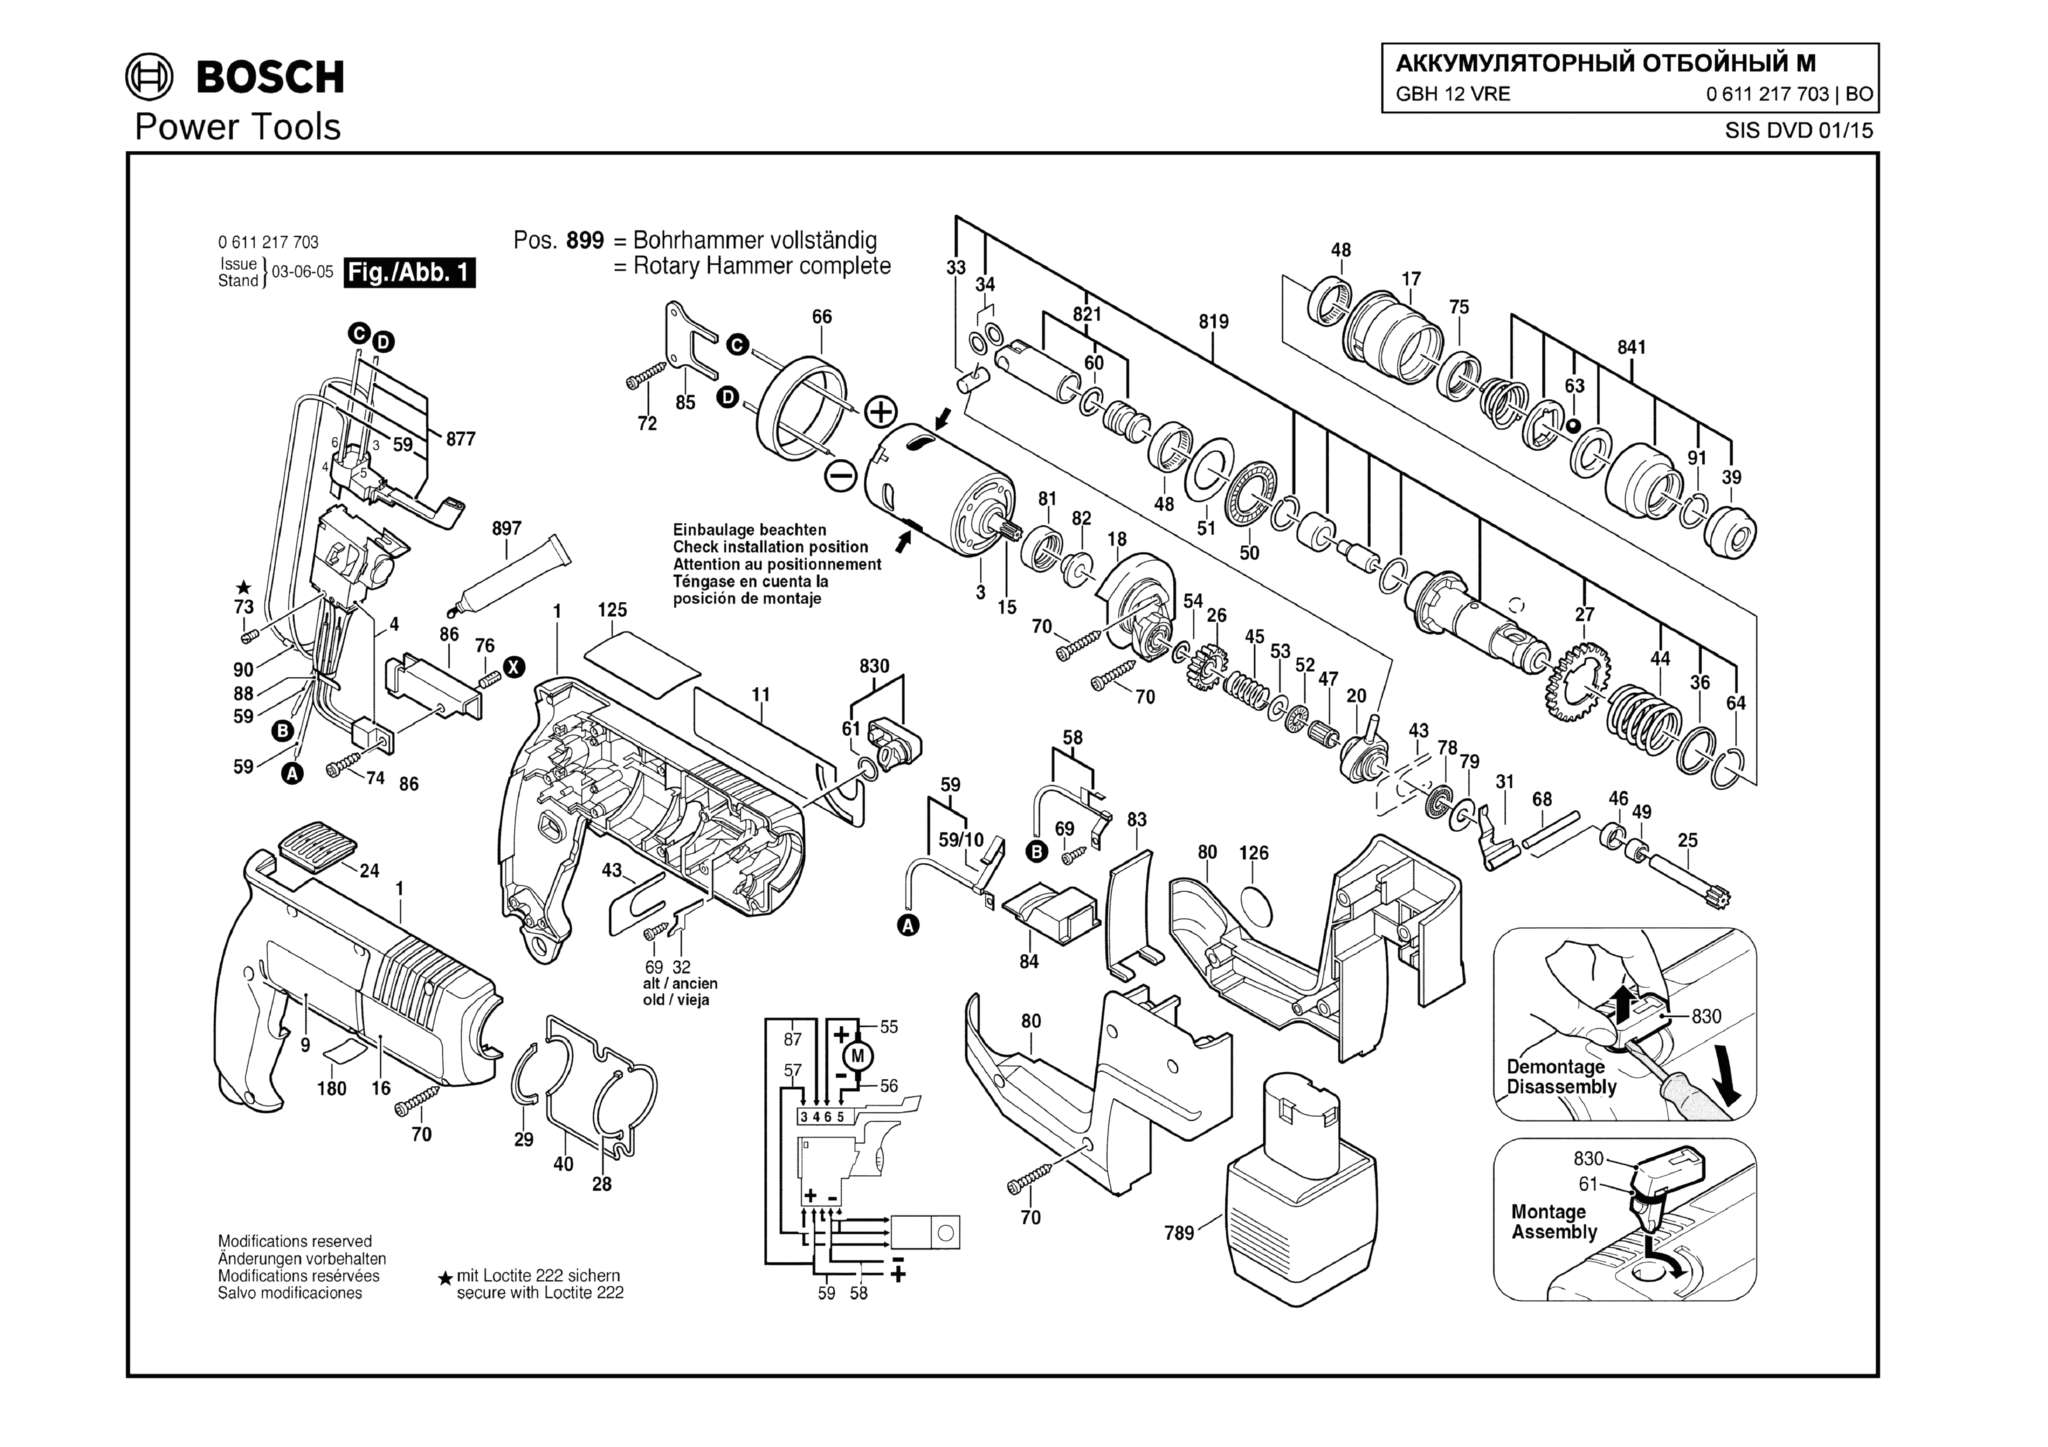 Запчасти, схема и деталировка Bosch GBH 12 VRE (ТИП 0611217703) (ЧАСТЬ 1)